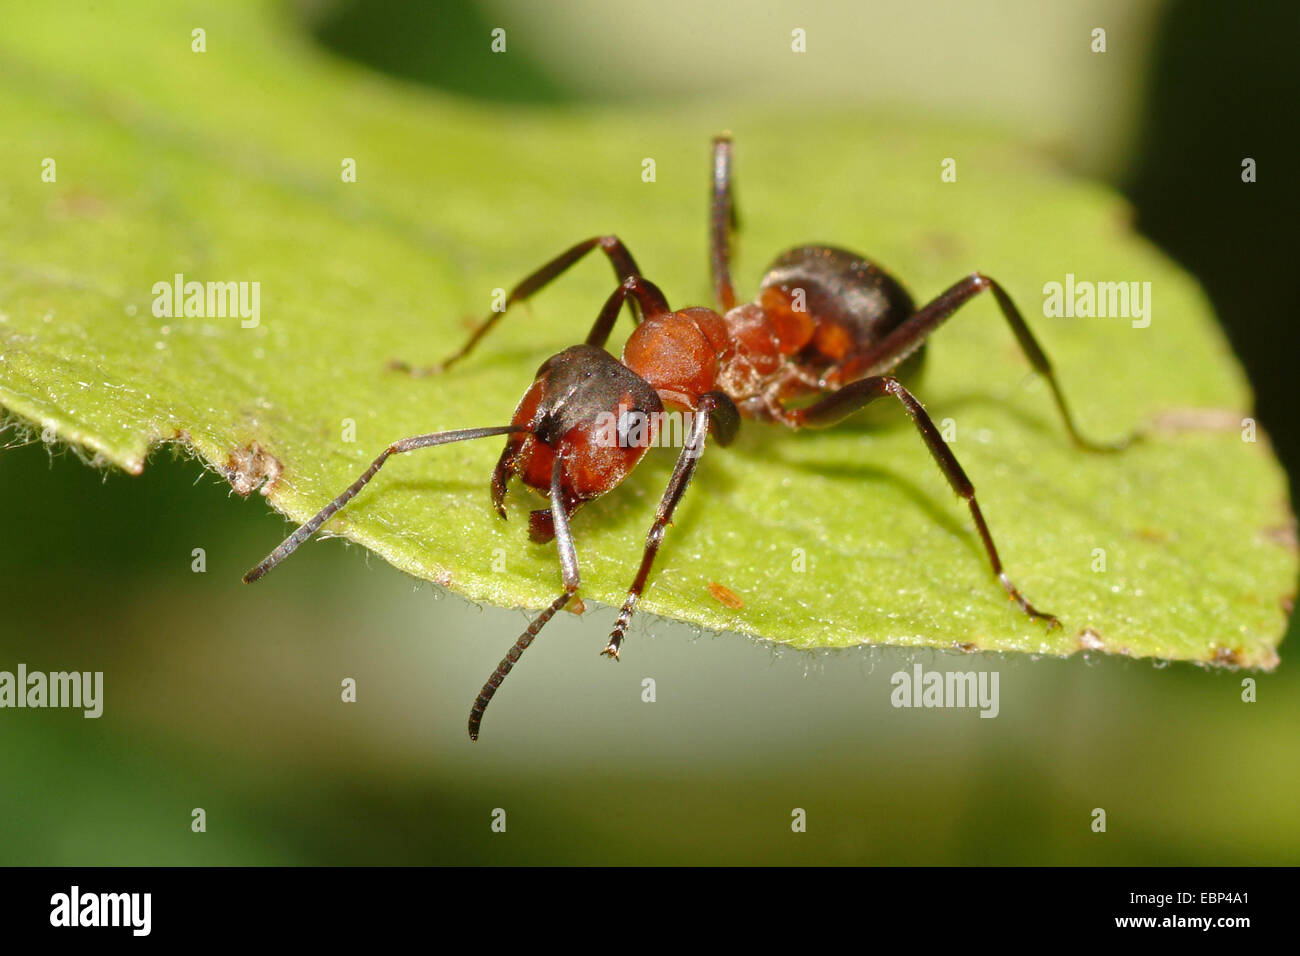 Sur de hormiga de madera, Caballo hormiga (Formica rufa), en una lámina, Alemania Foto de stock